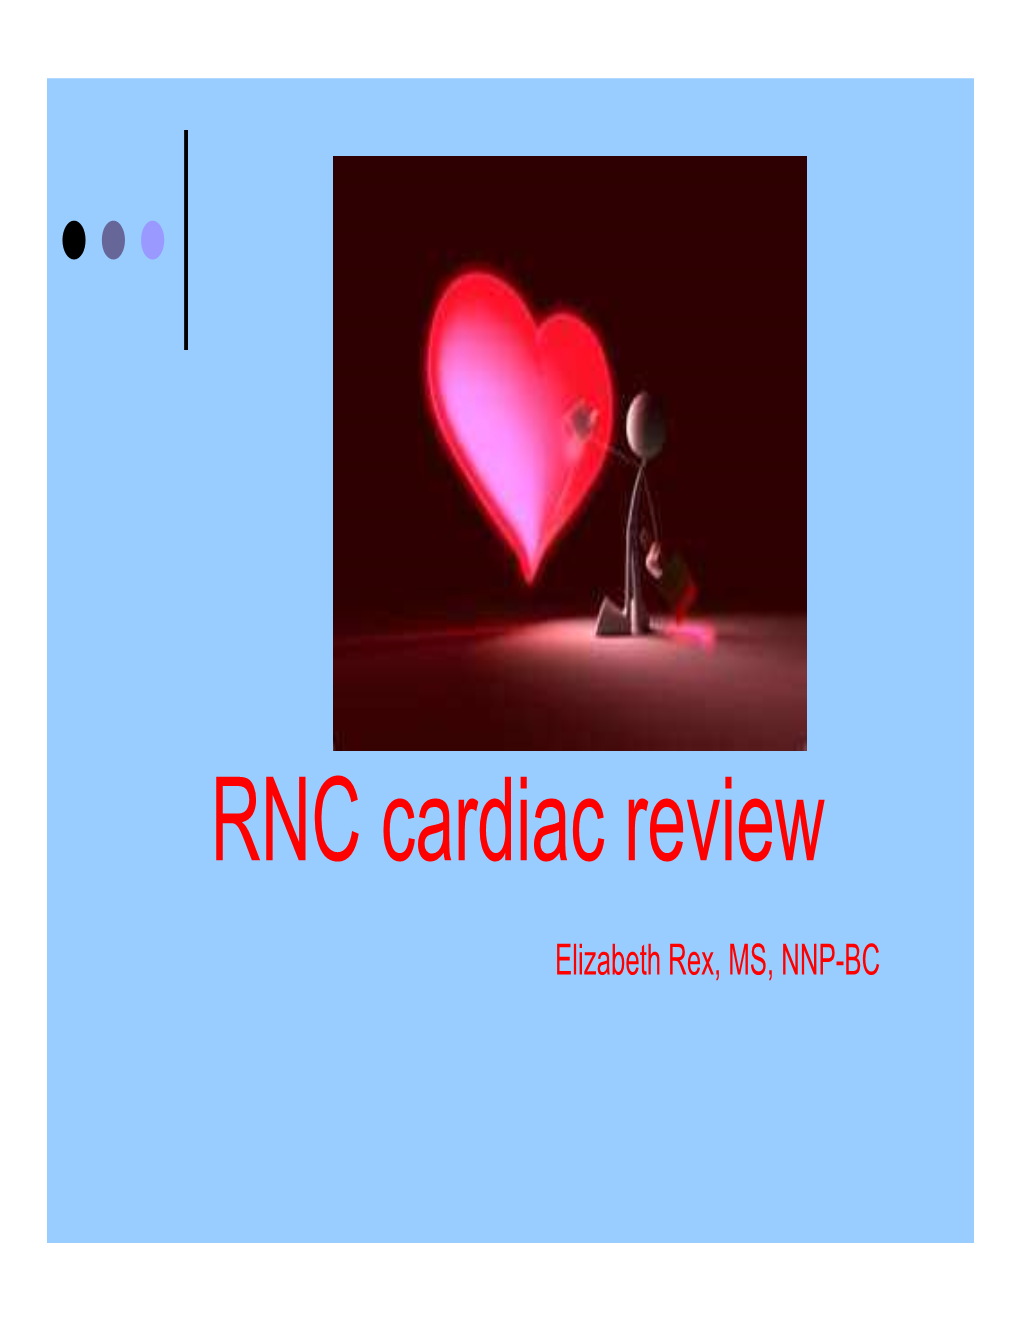 7. Cardiac Assess RNC 2018 E